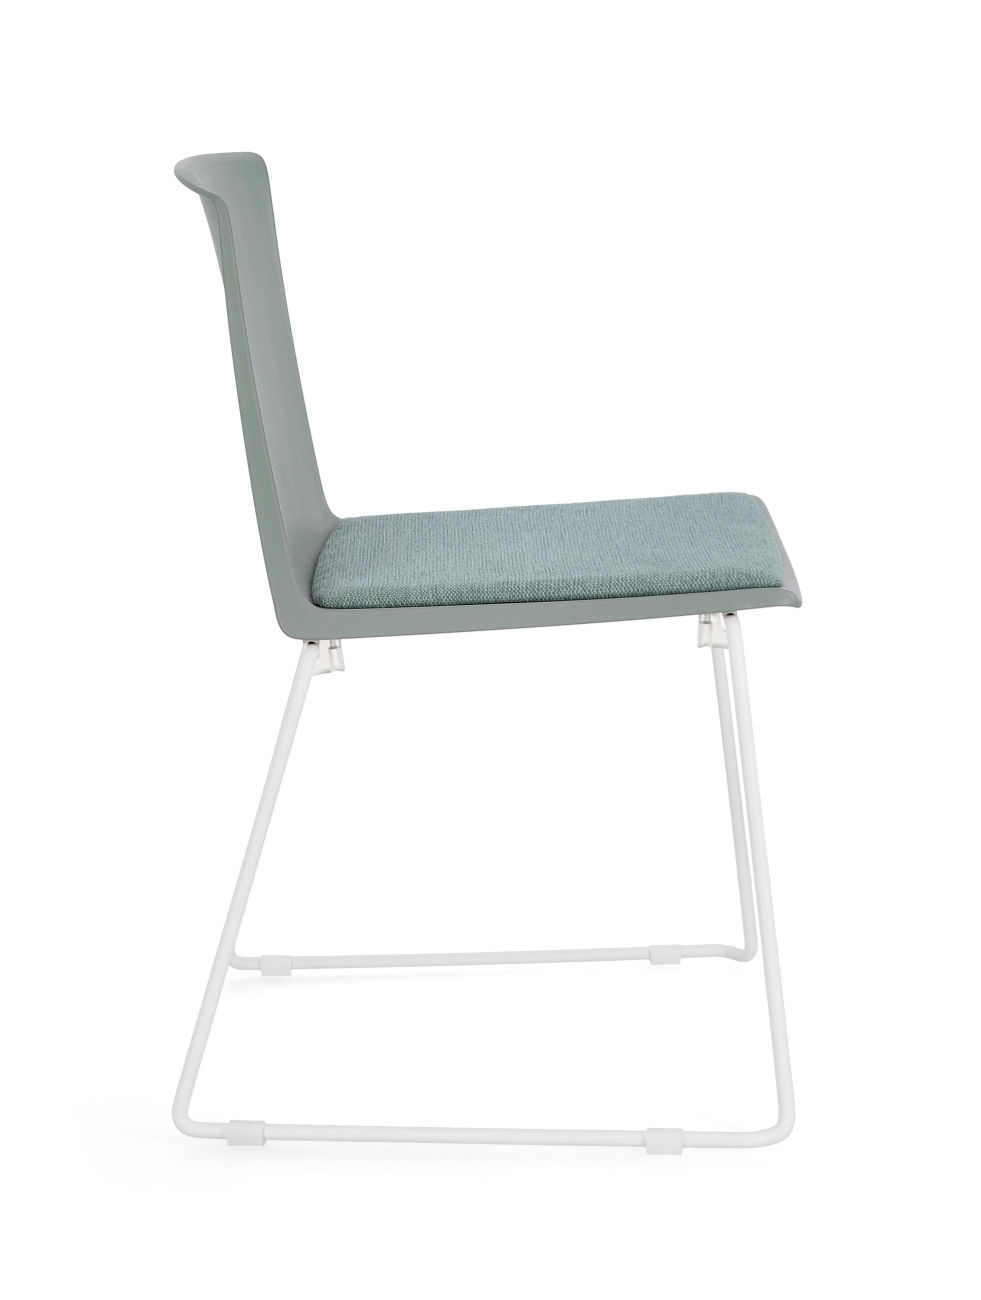 Der Esszimmerstuhl Giulia überzeugt mit seinem modernen Stil. Gefertigt wurde er aus Kunststoff, welches einen Salbei Farbton besitzt. Das Gestell ist aus Metall und hat eine weiße Farbe. Der Stuhl besitzt eine Sitzhöhe von 46 cm.